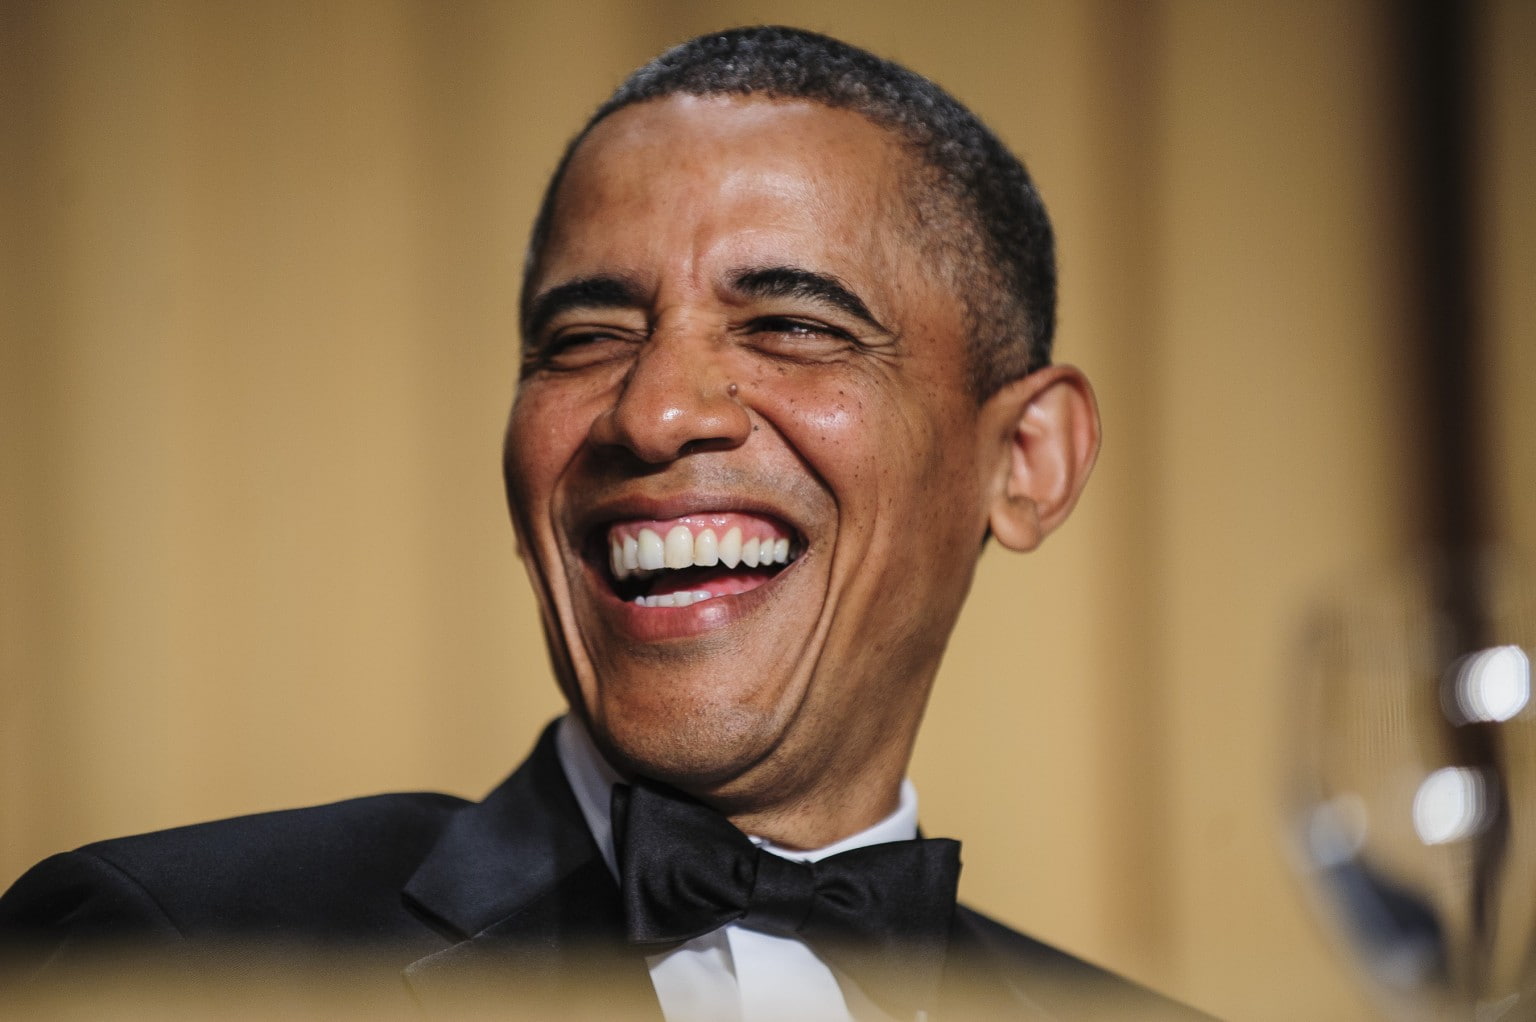 Barack Obama, tuxedo, bow-tie, headshot, portrait, smiling